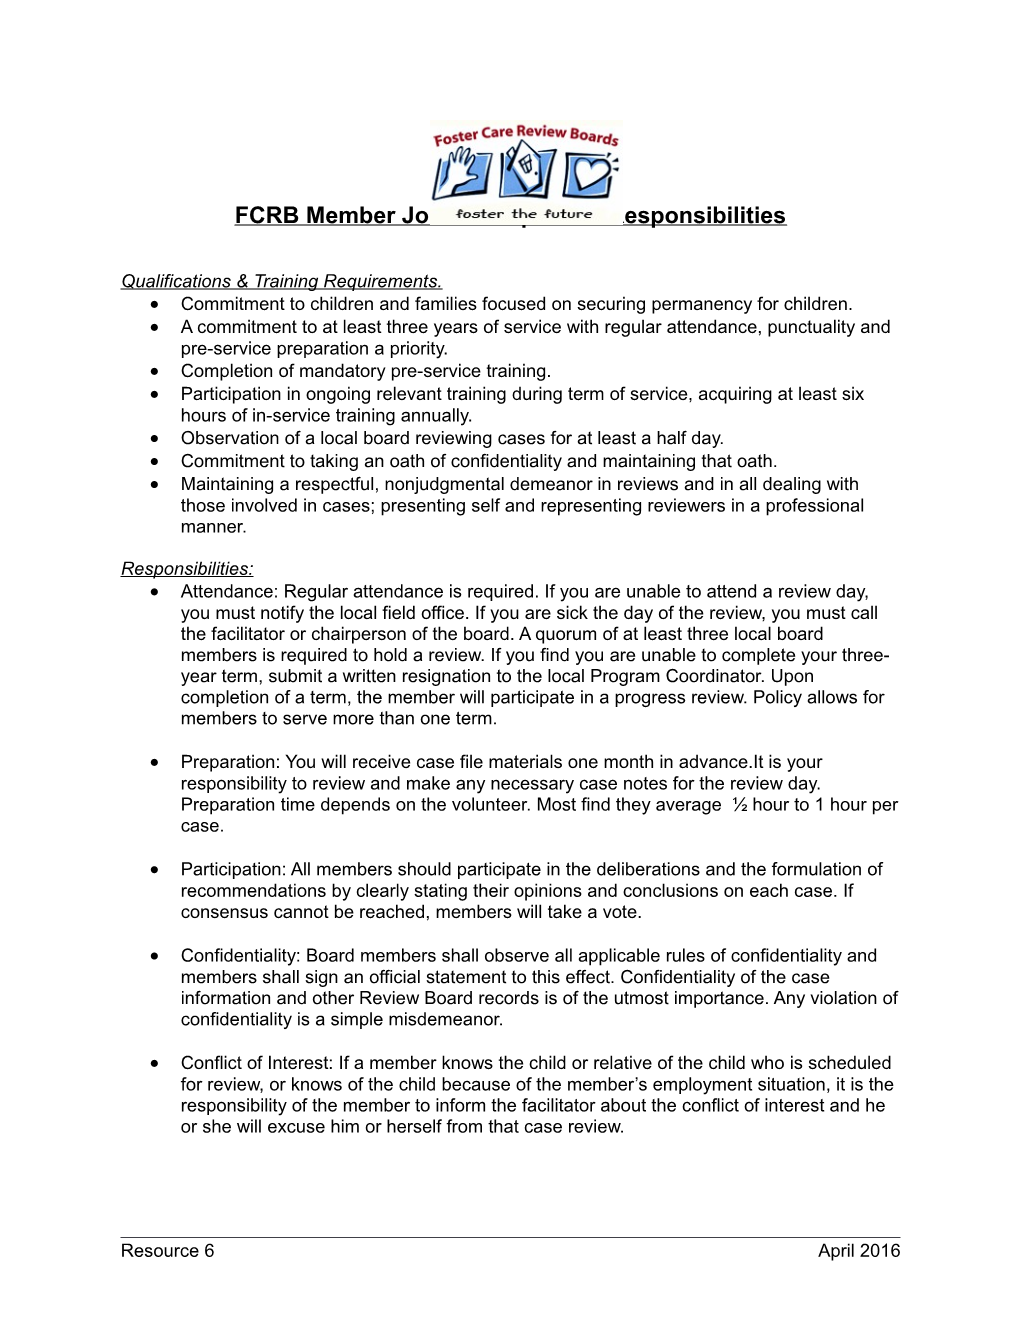 FCRB Member Job Description & Responsibilities